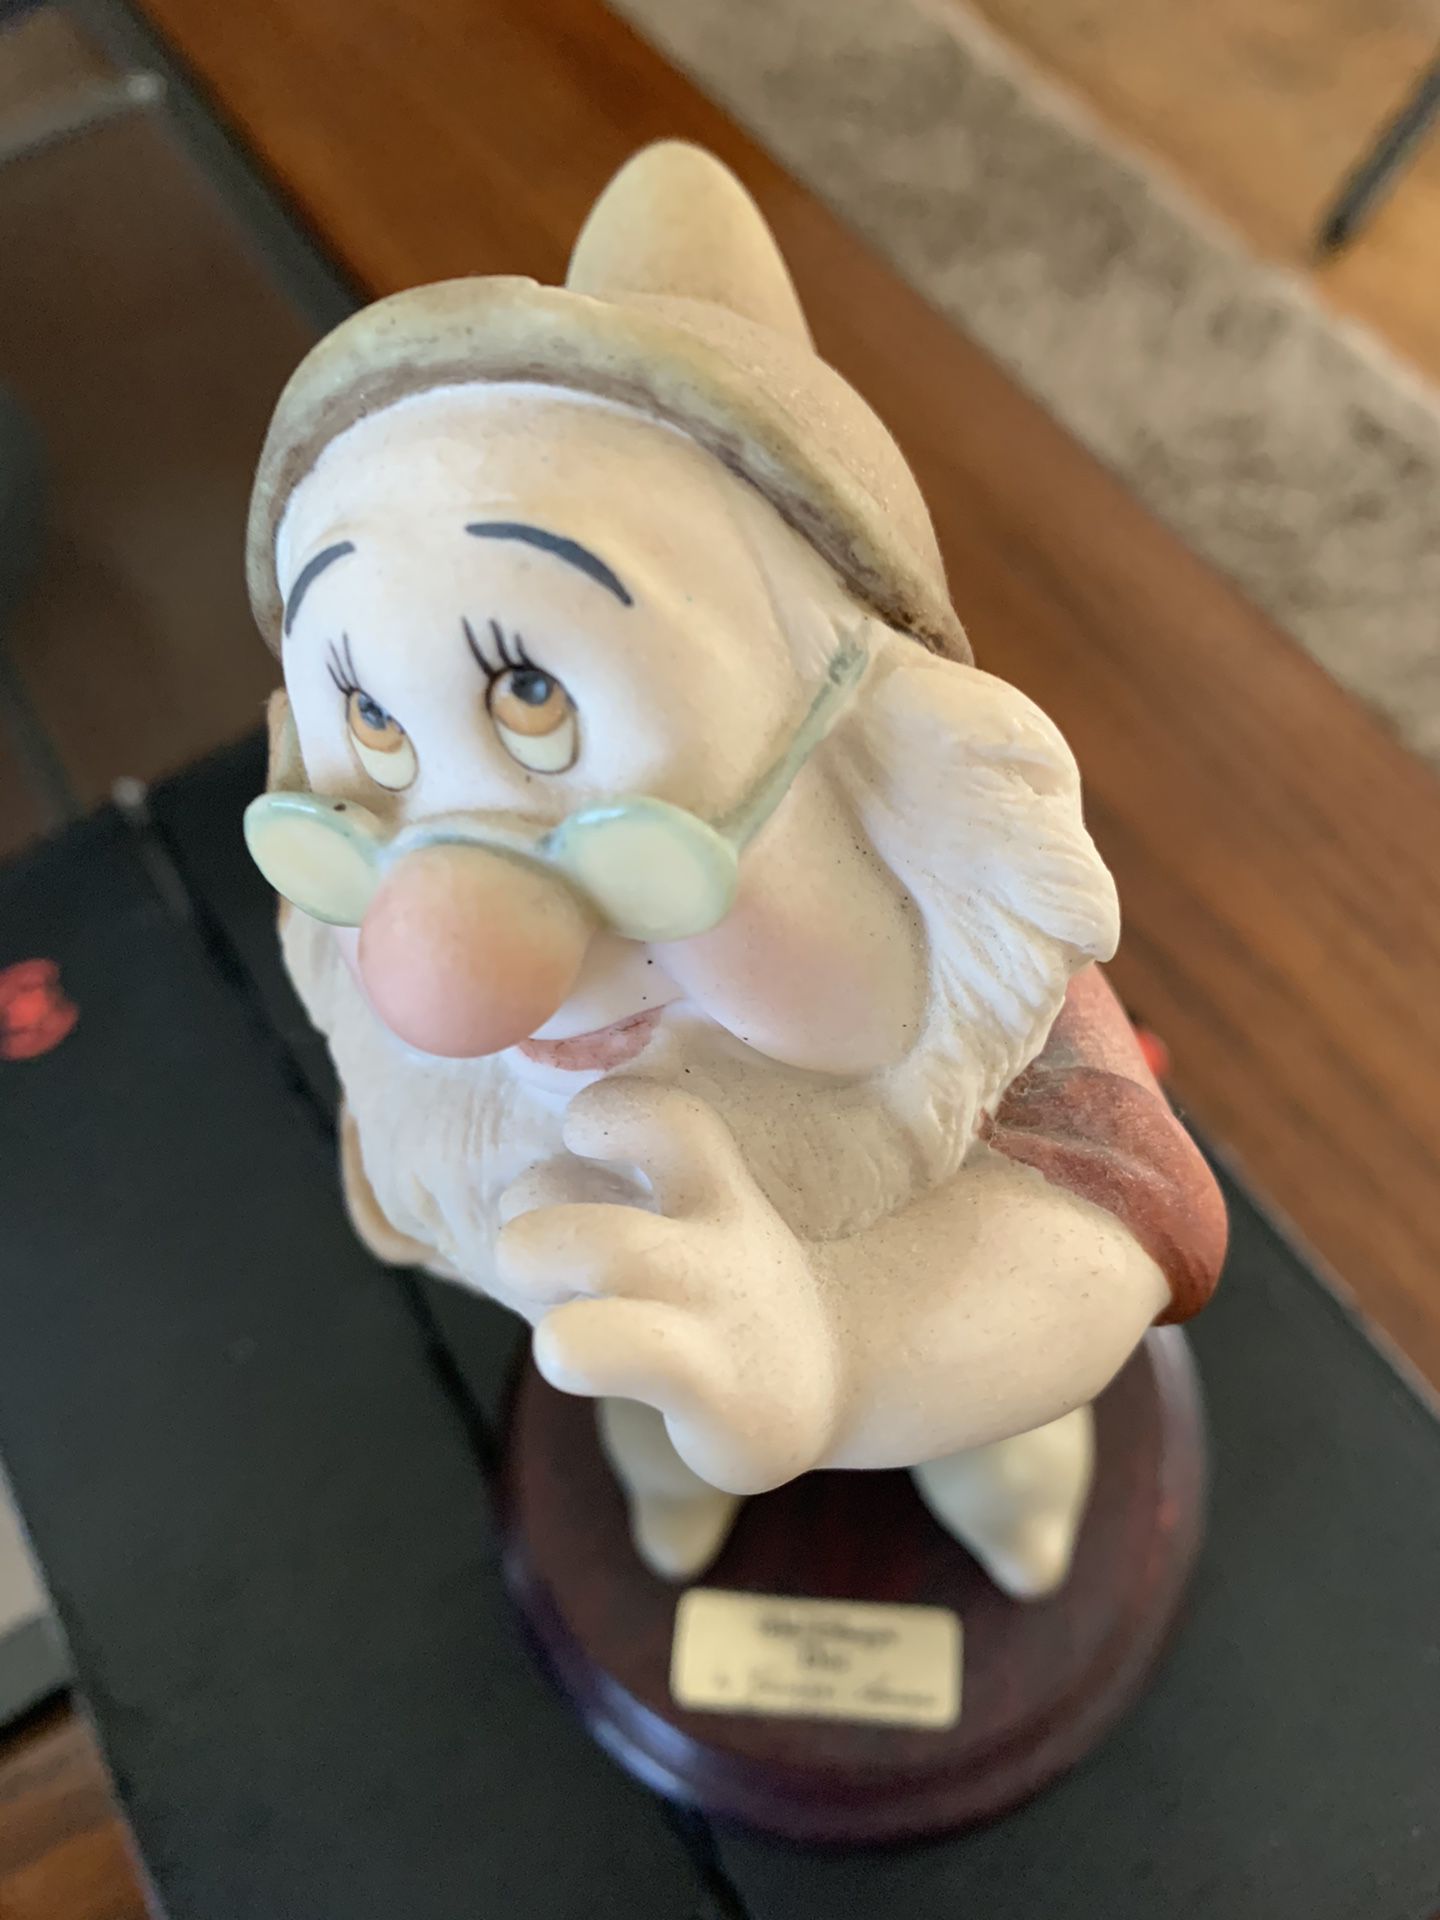 Giuseppe Armani Walt Disney DOC DWARF figurine sculpture